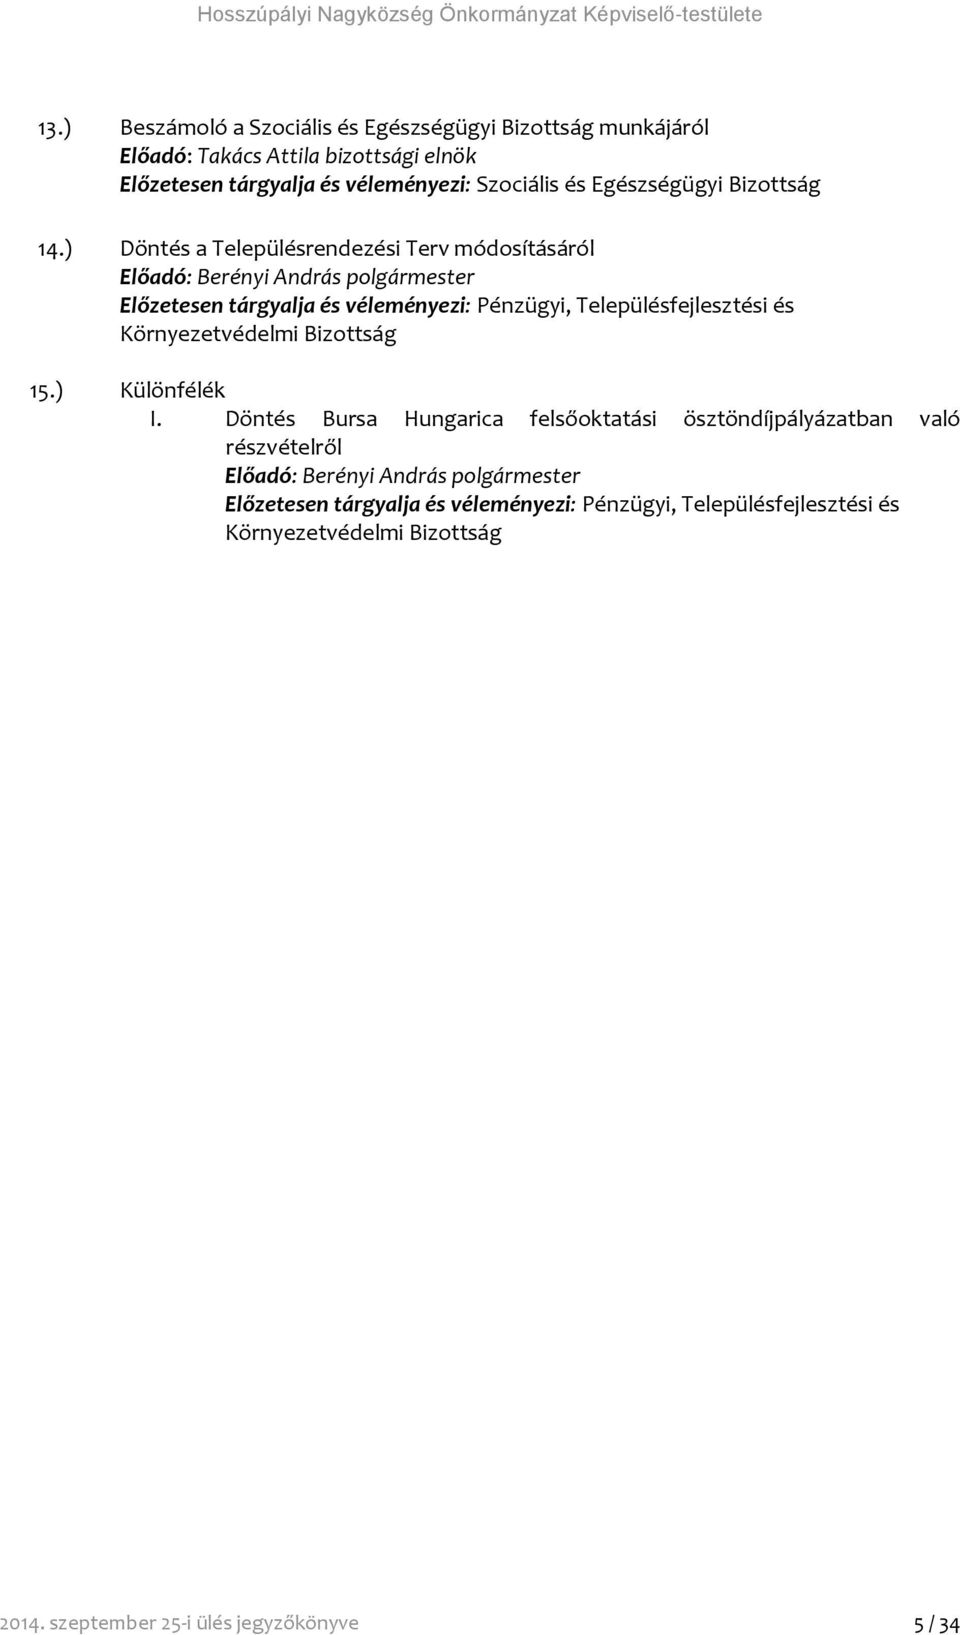 14.) Döntés a Településrendezési Terv módosításáról Előadó: Berényi András polgármester Előzetesen tárgyalja és véleményezi: Pénzügyi, Településfejlesztési és